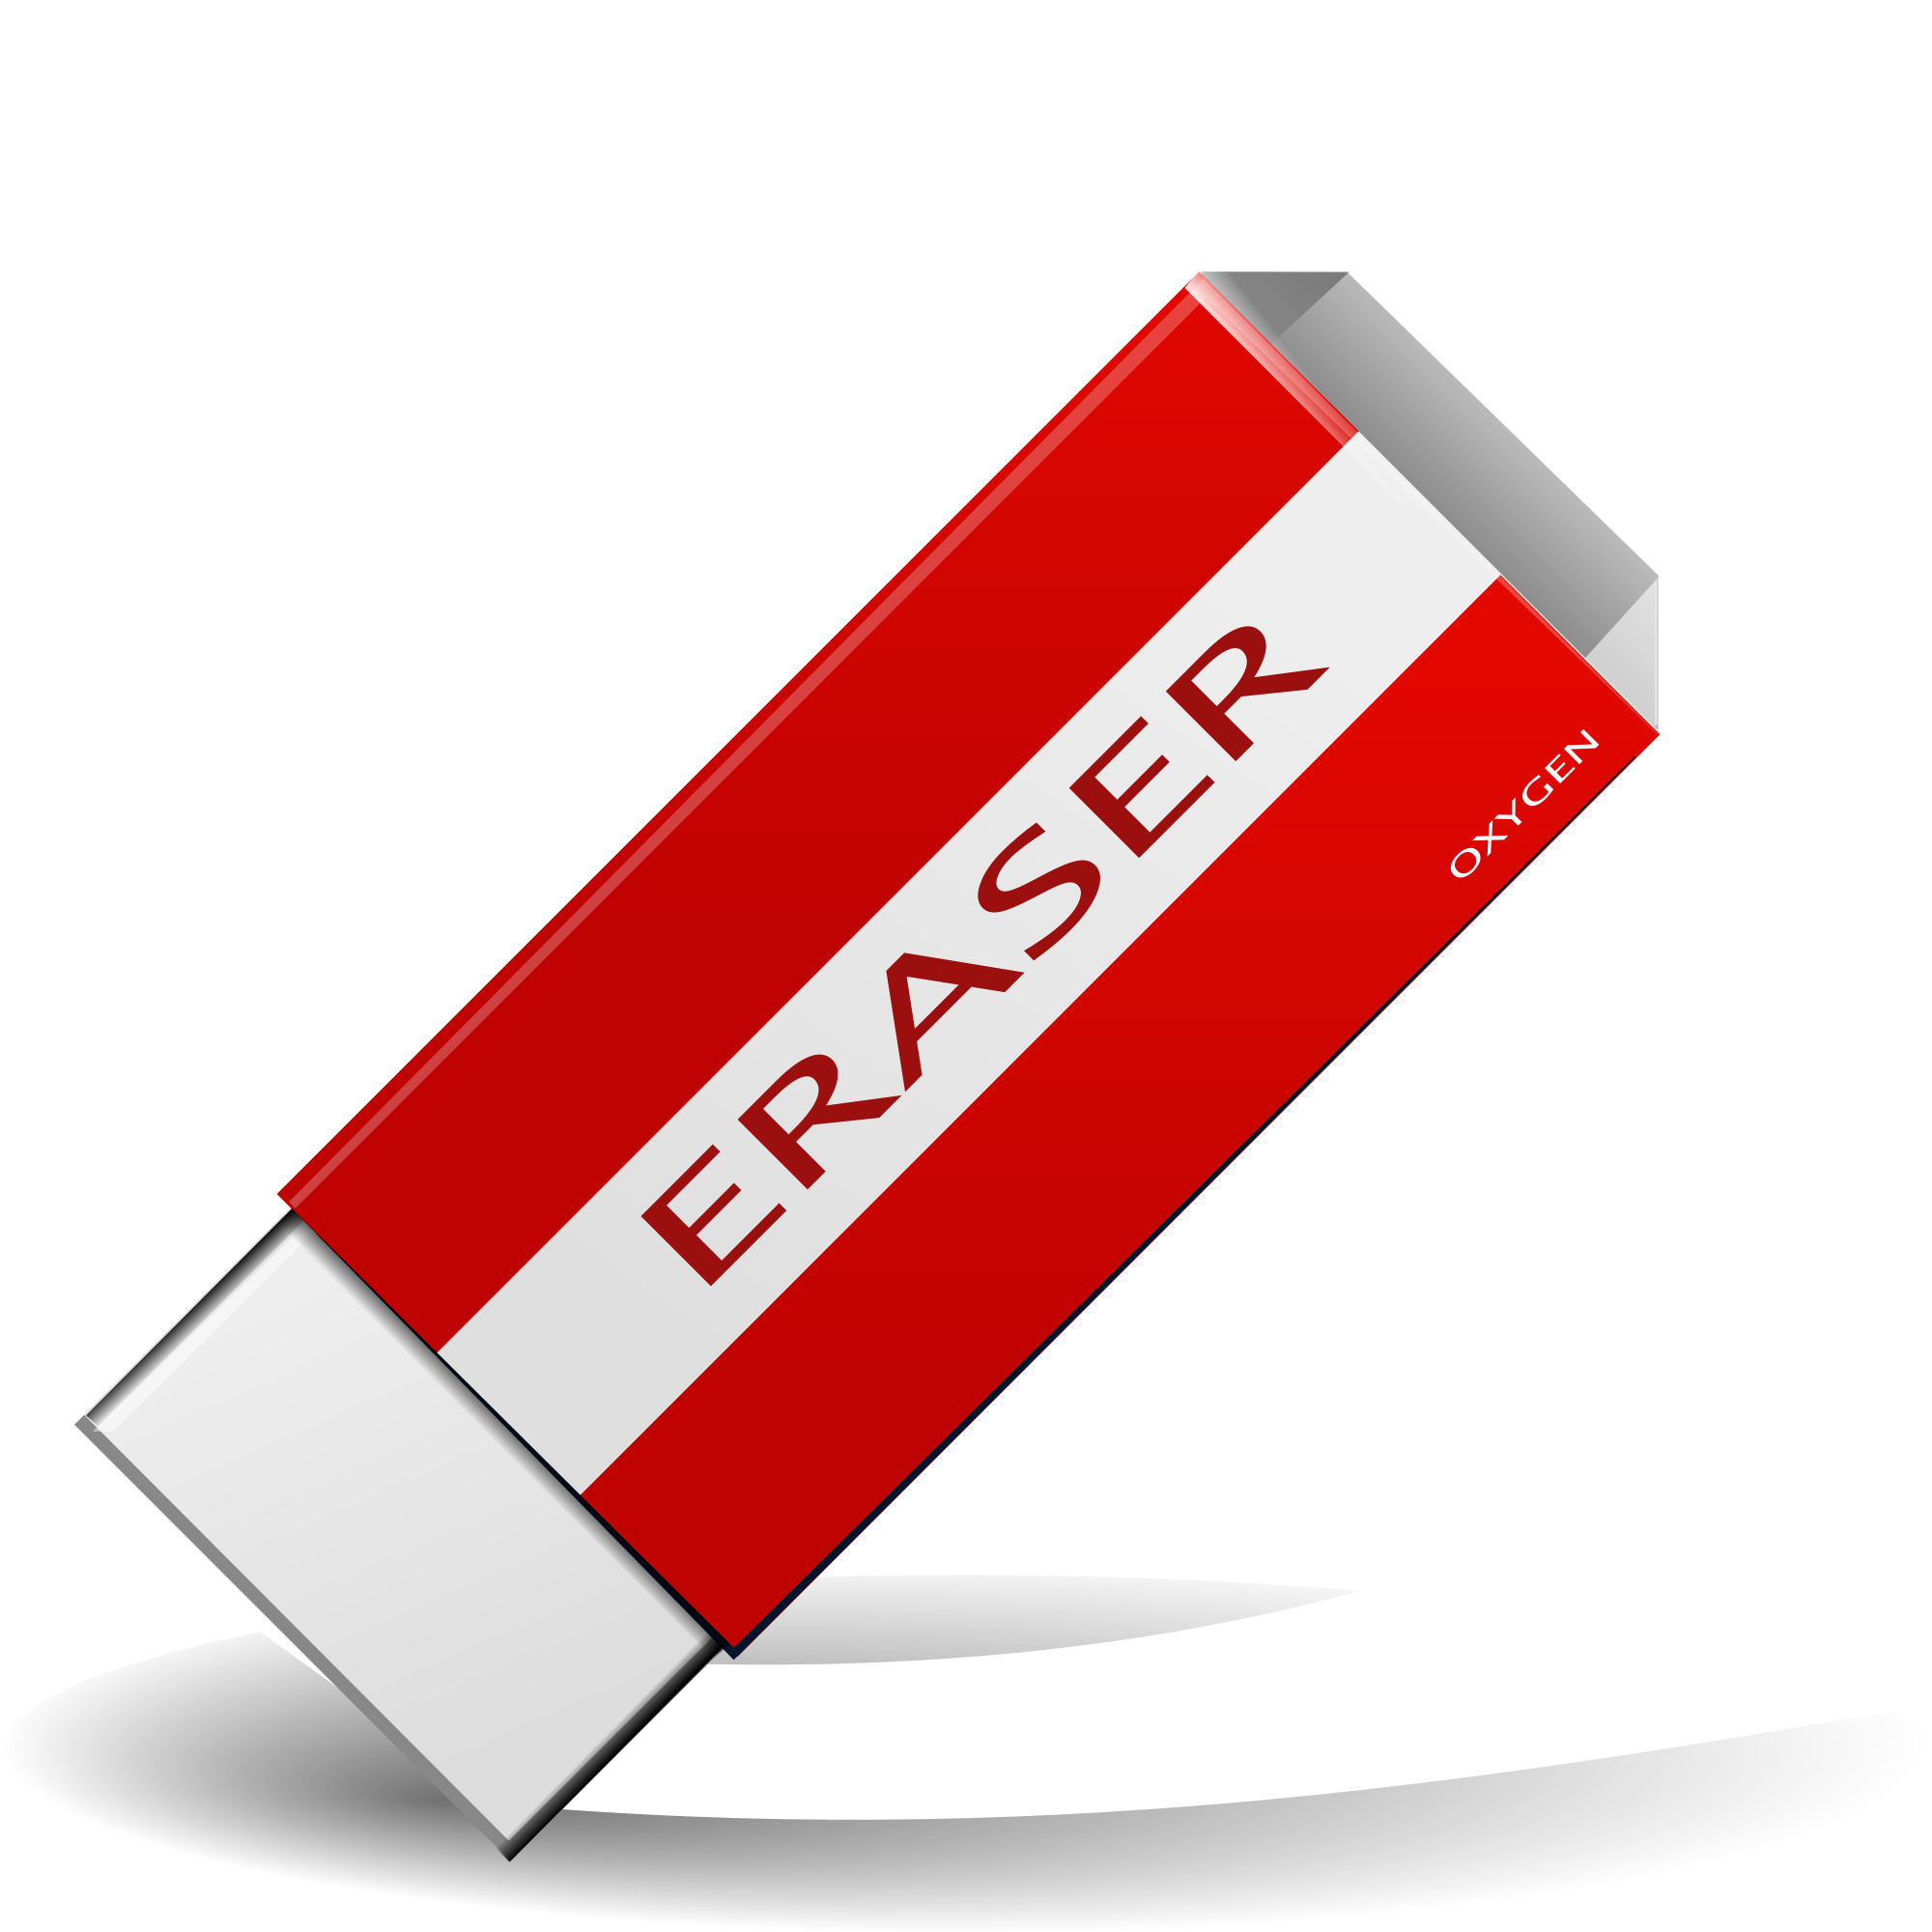 Download Red clipart eraser, Red eraser Transparent FREE for download on WebStockReview 2021